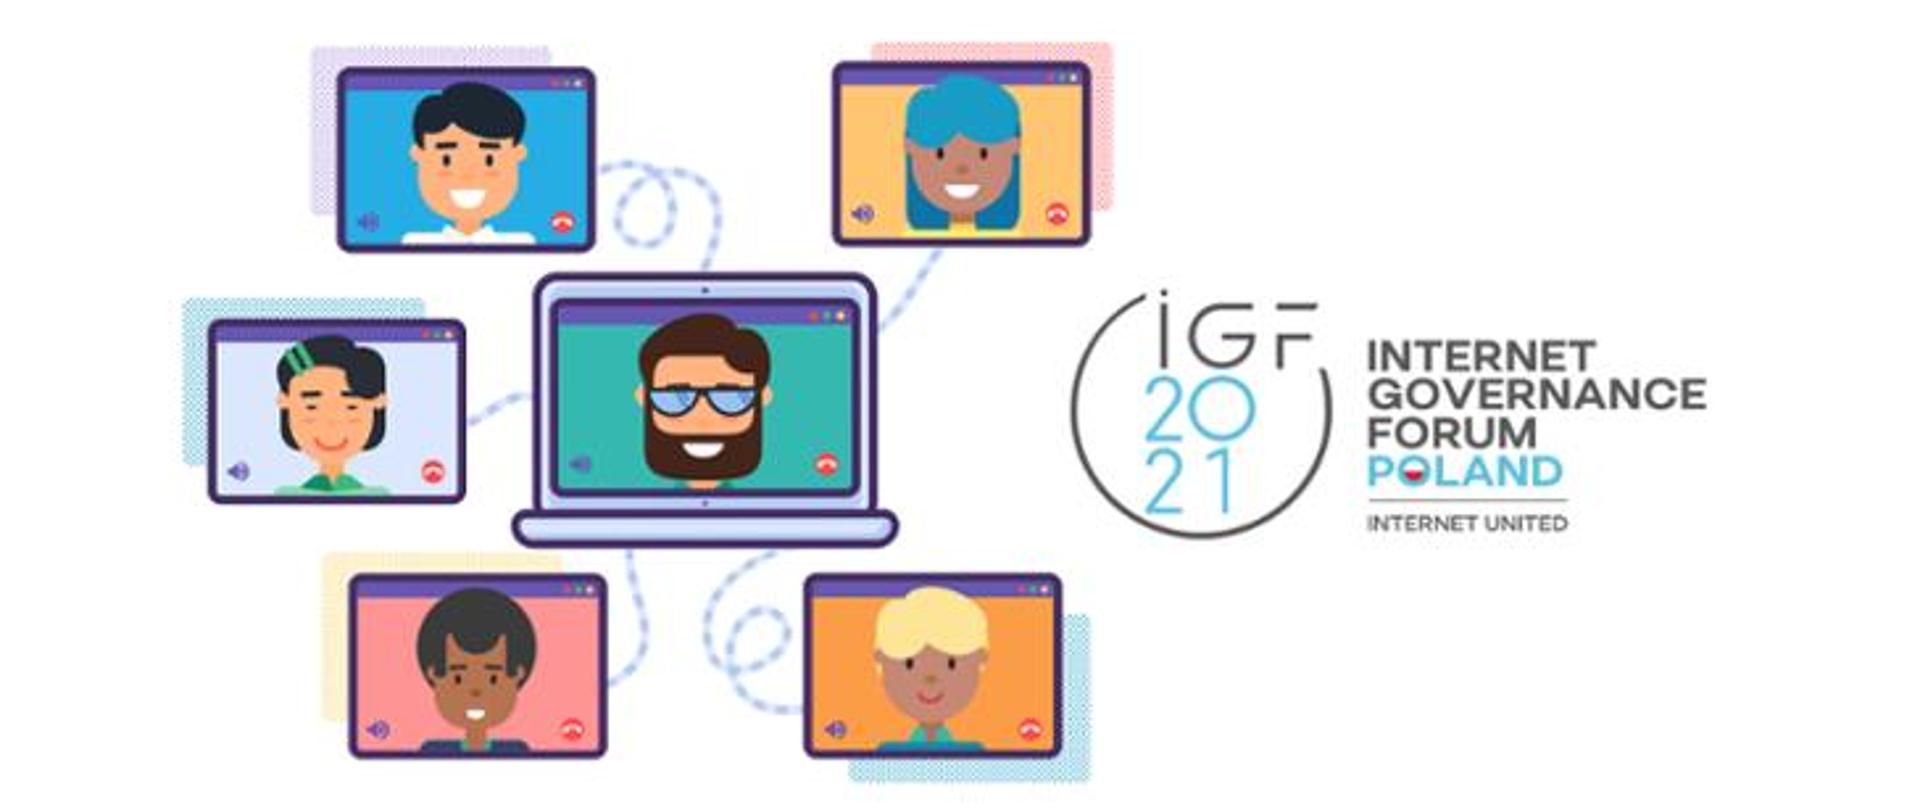 Zdjęcie przedstawia pięć animowanych ekranów komputera, na których widać postacie rysunkowe osób rozmawiających ze sobą za pomocą wideo aplikacji. Po prawej stronie znajduje się logo Forum Zarządzania Internetem. 